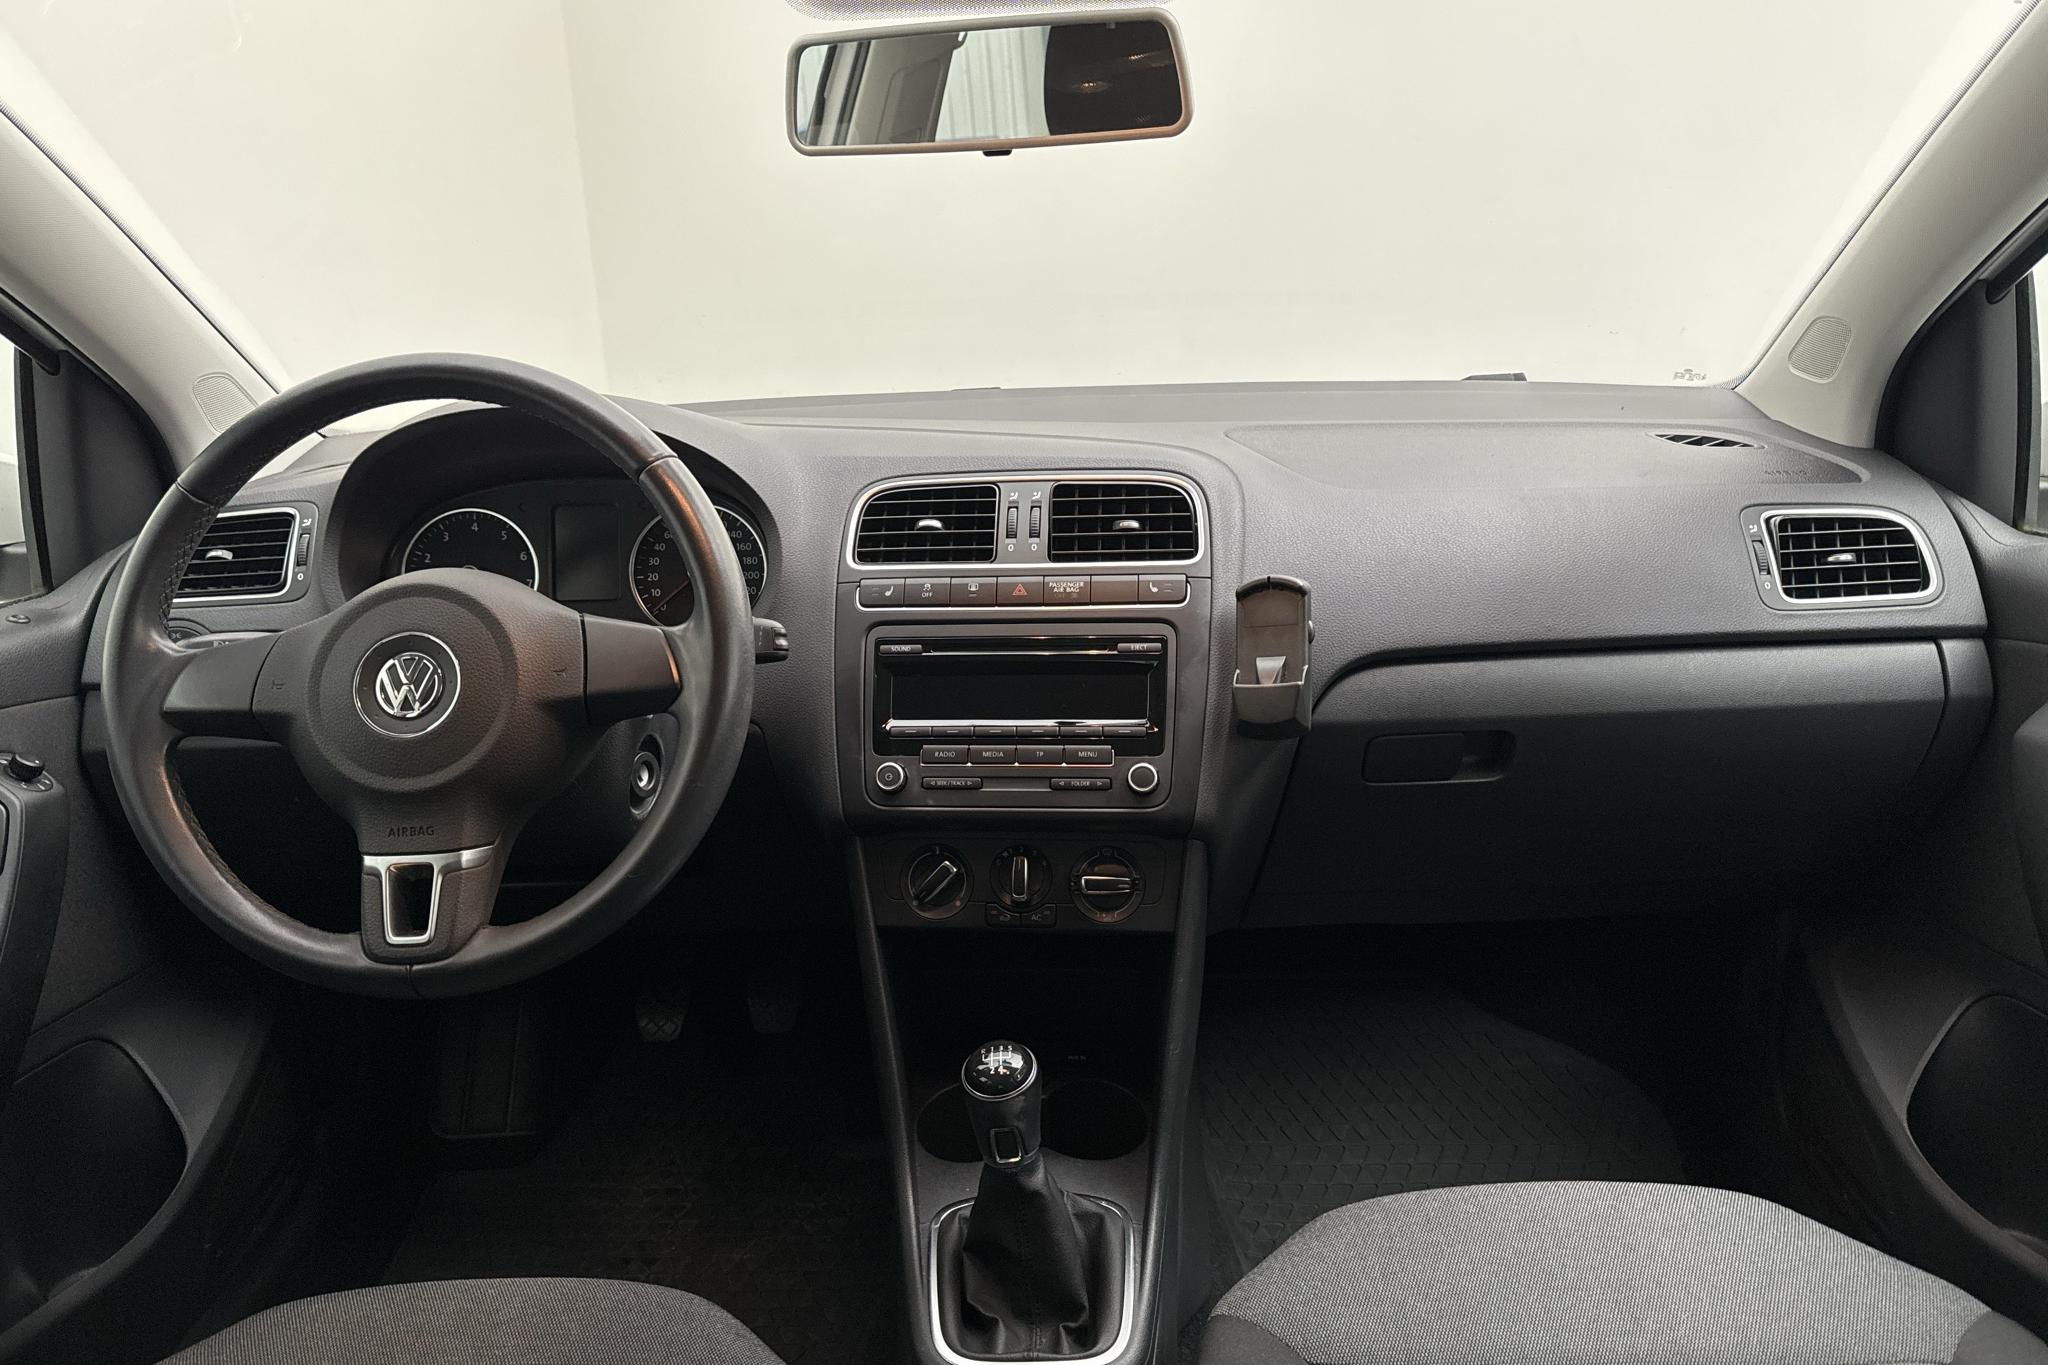 VW Polo 1.4 5dr (85hk) - 5 729 mil - Manuell - vit - 2014